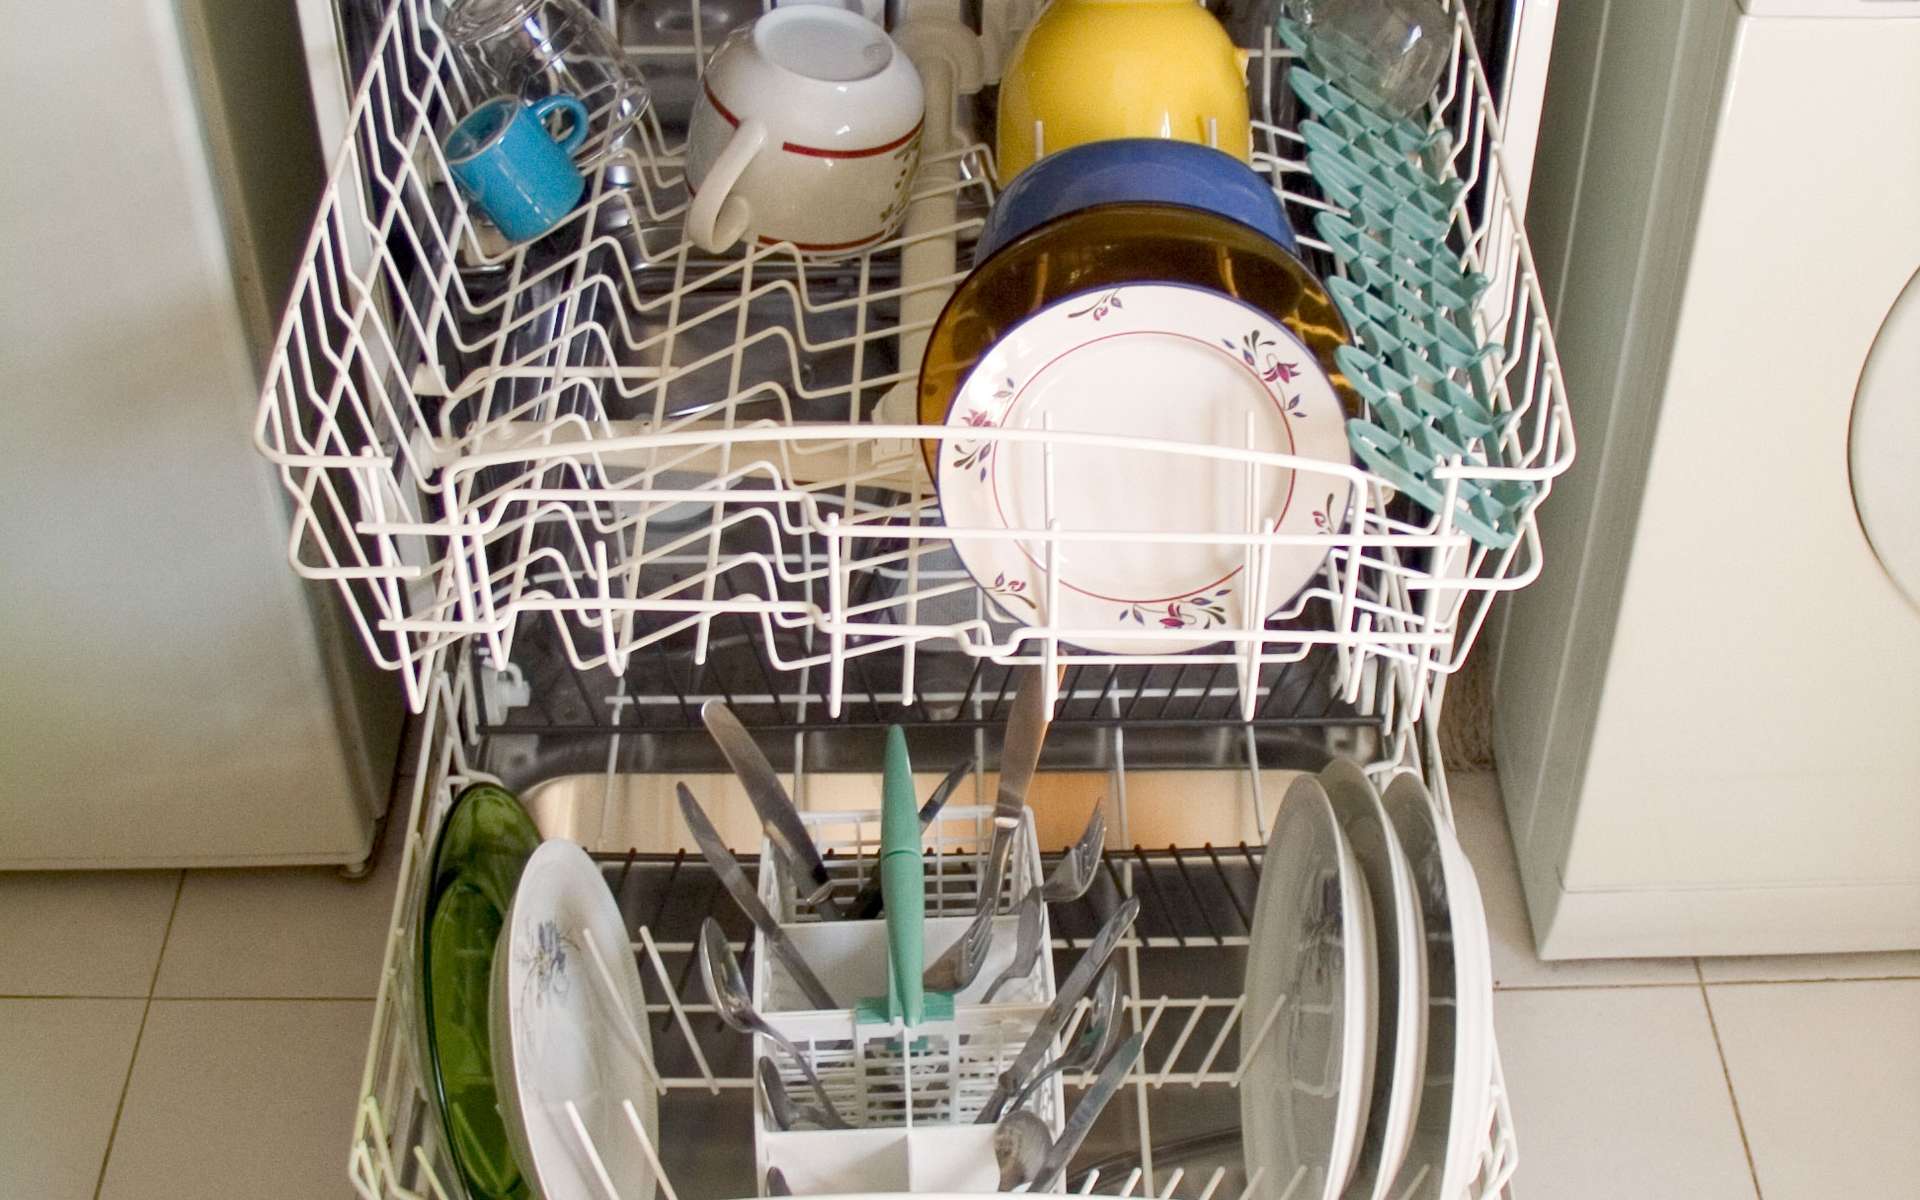 La vaisselle dans le Lave-vaisselle | Photo : Shutterstock